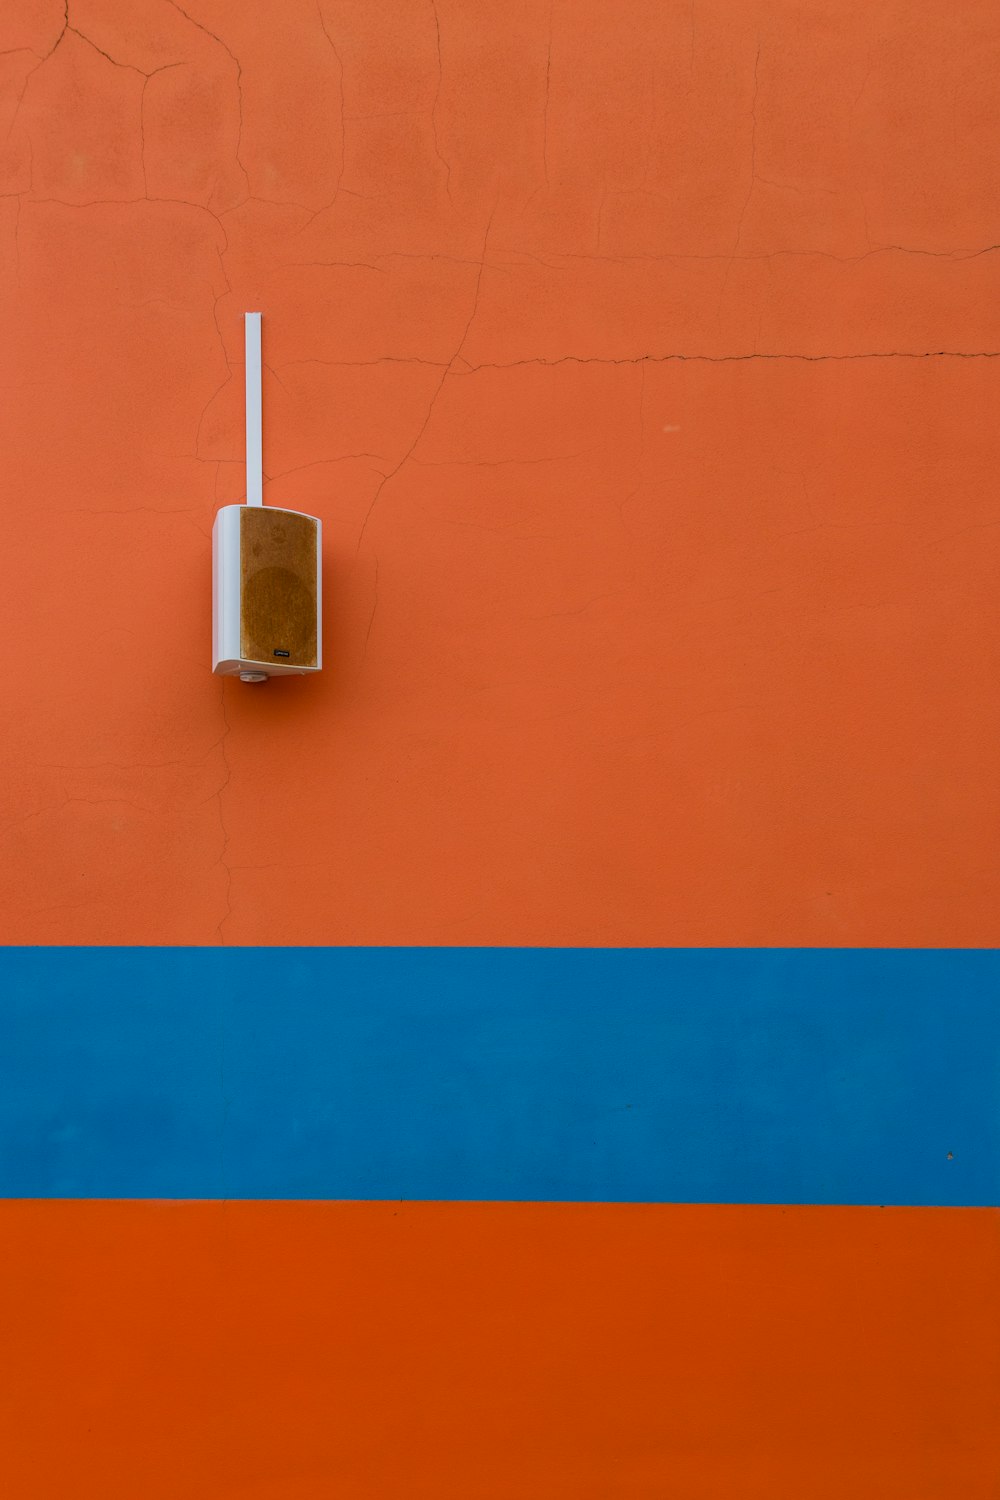 alto-falante branco montado na parede pintada de laranja